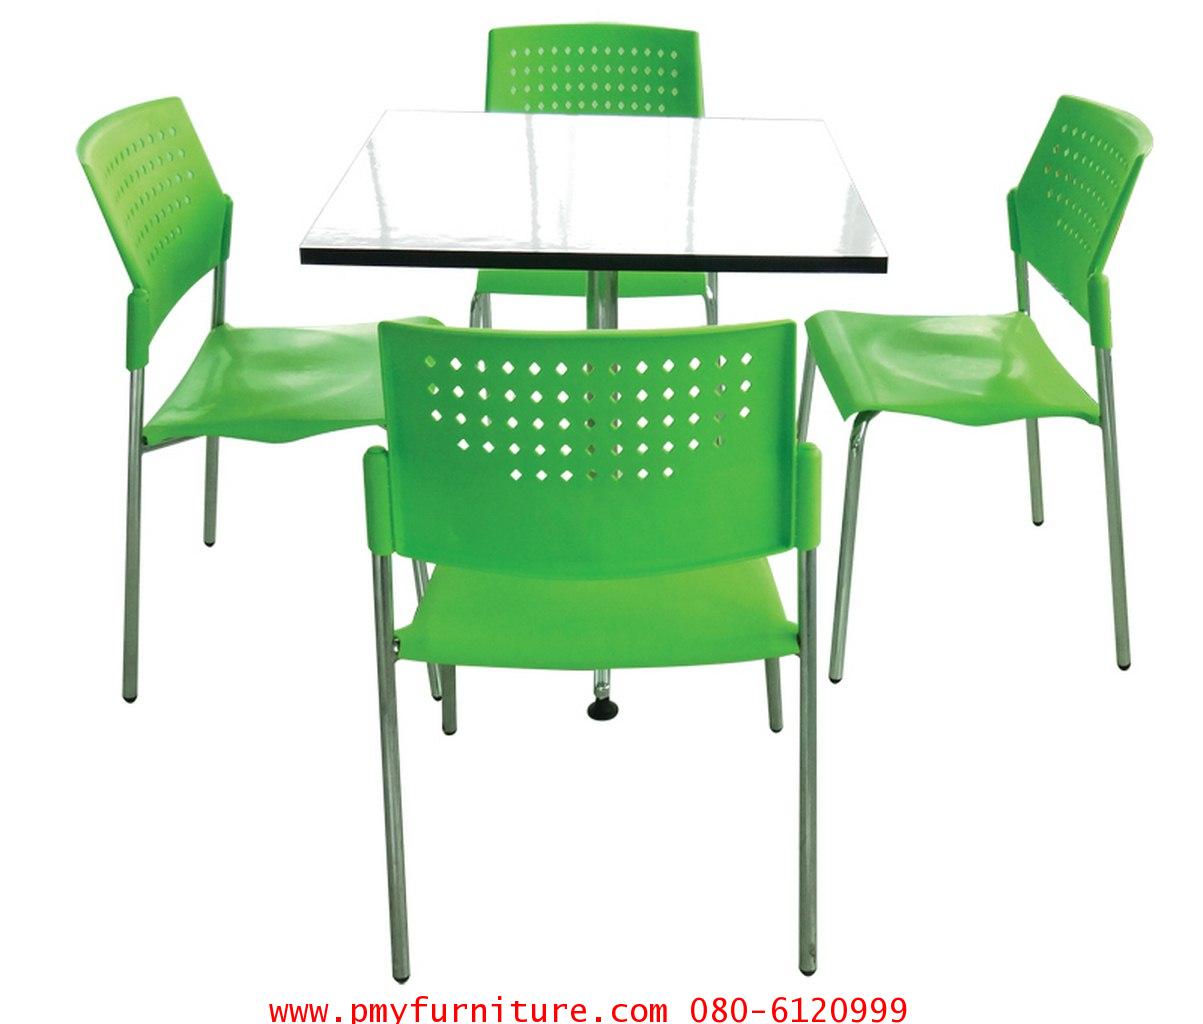 pmy6-6 ชุดโต๊ะเก้าอี้ STB 215-1 0